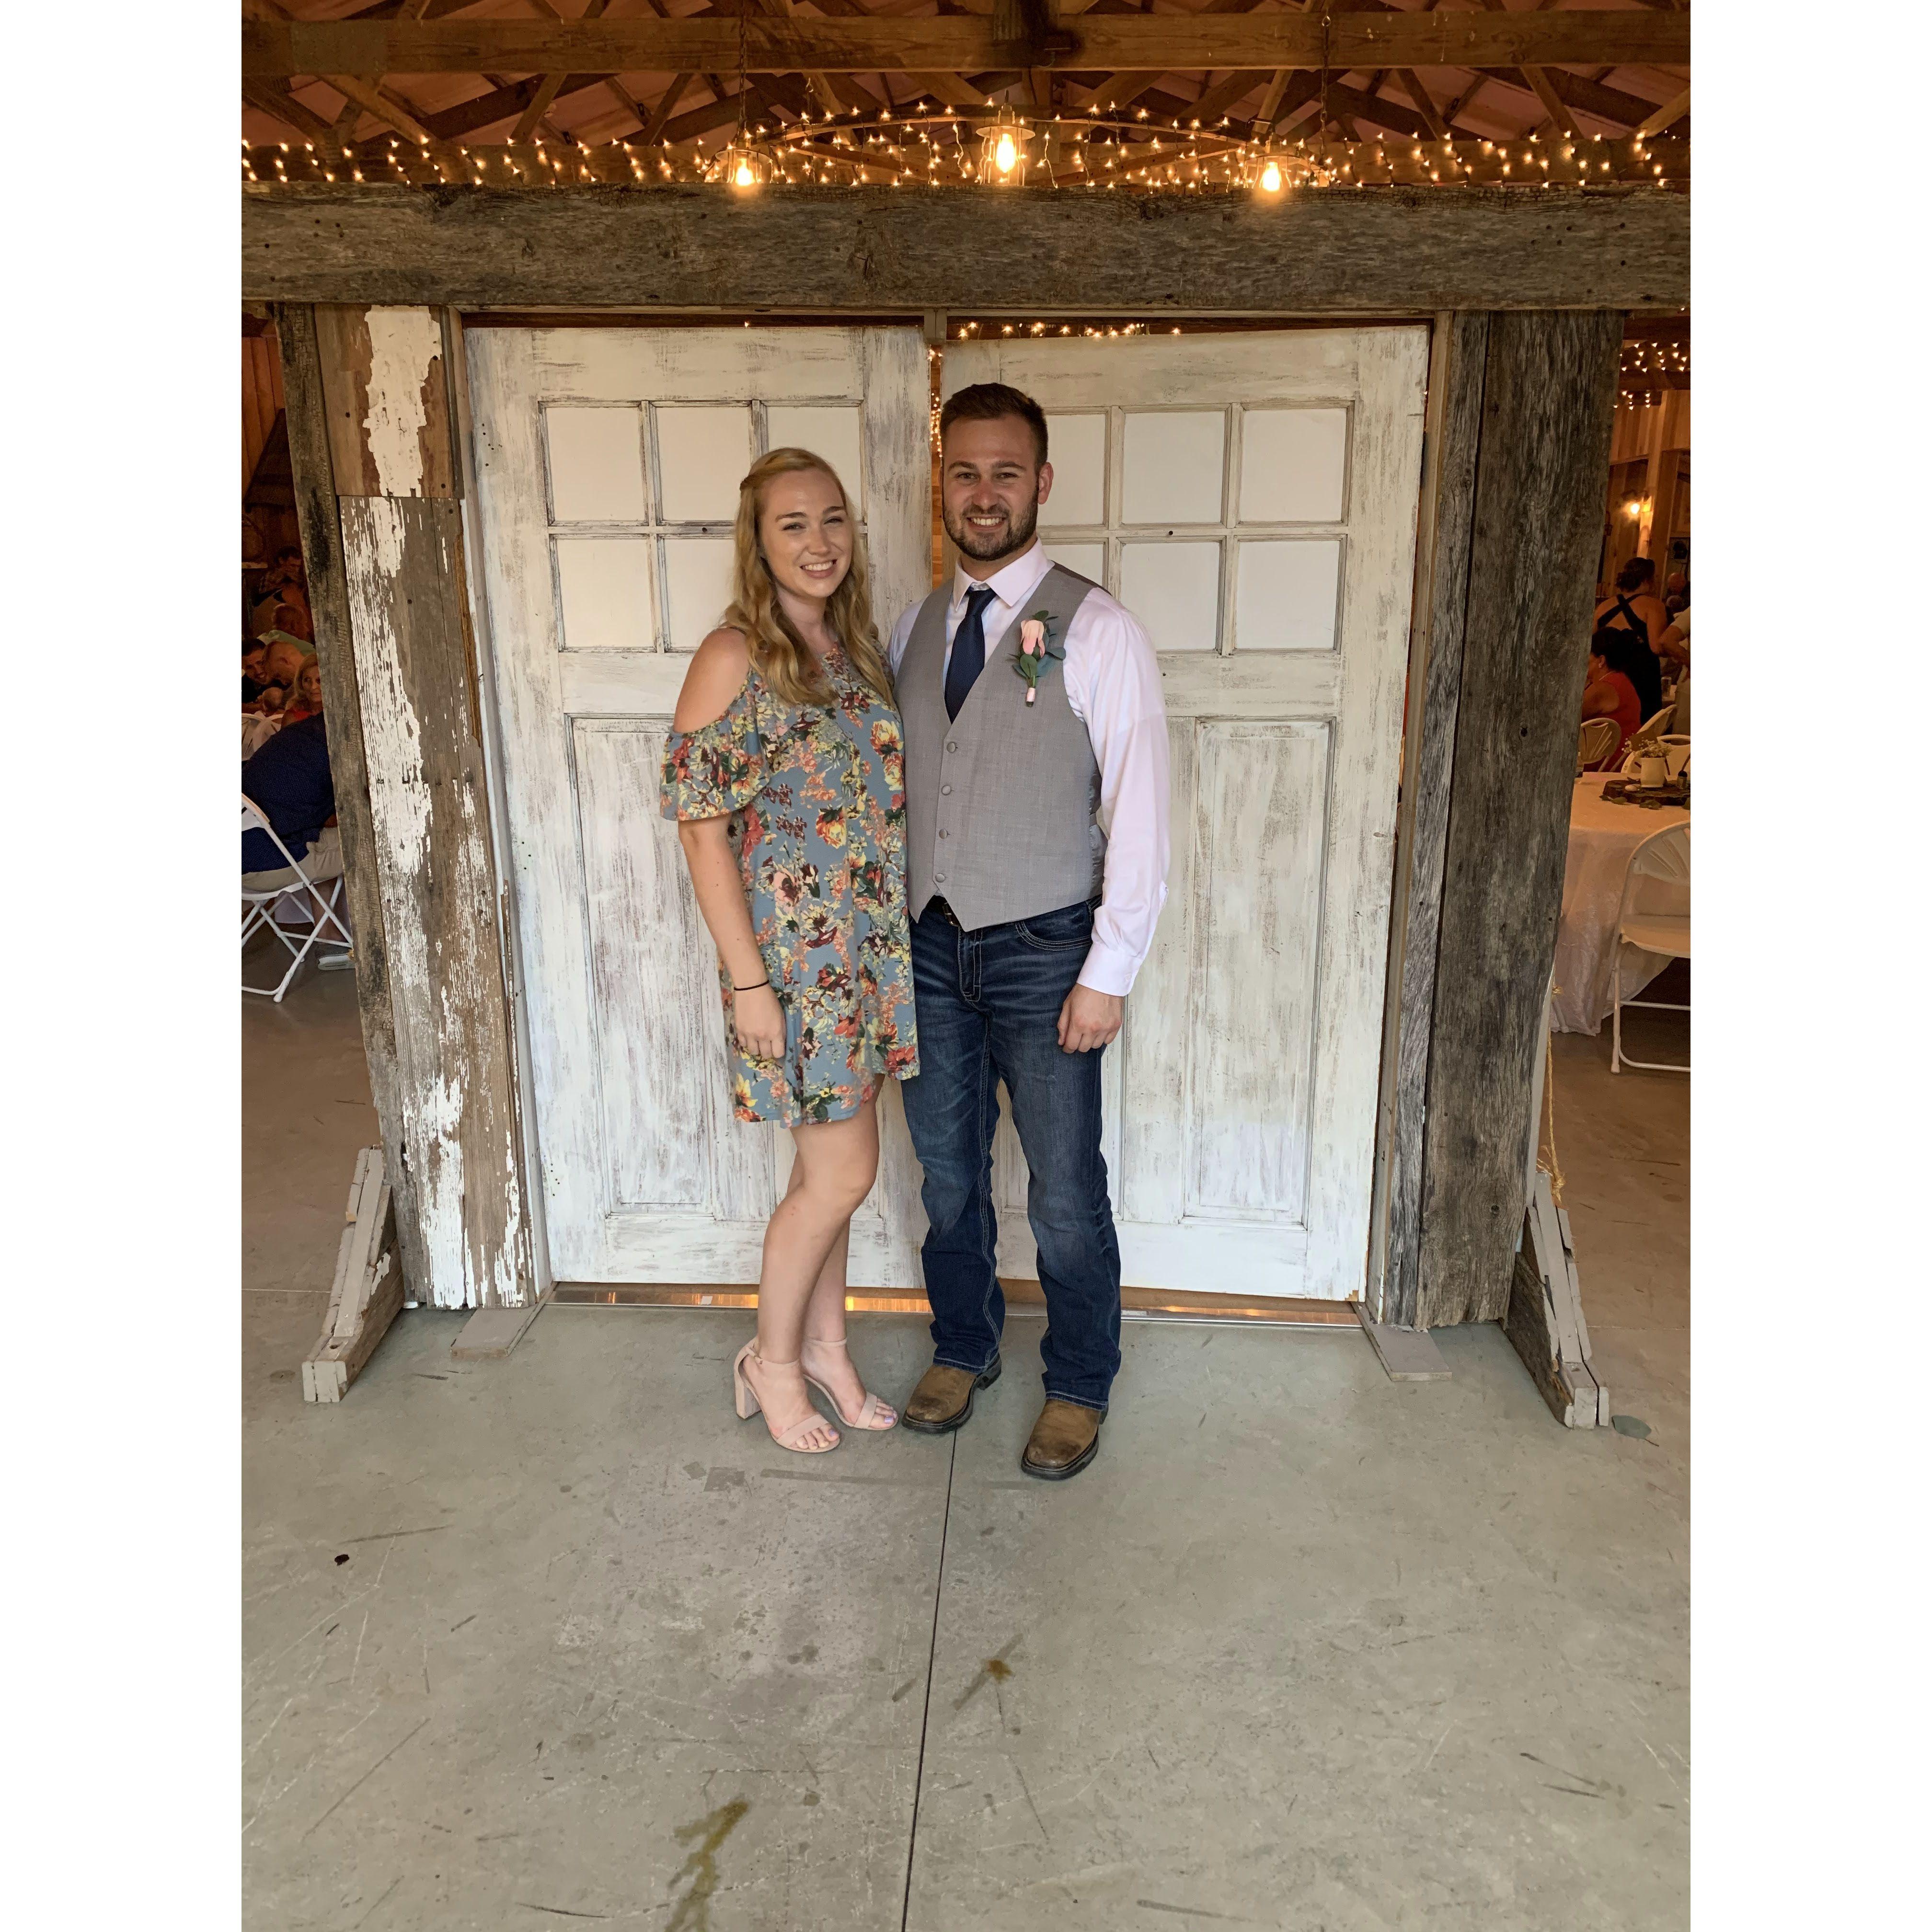 Tyler and Michaela's wedding, August 2020 